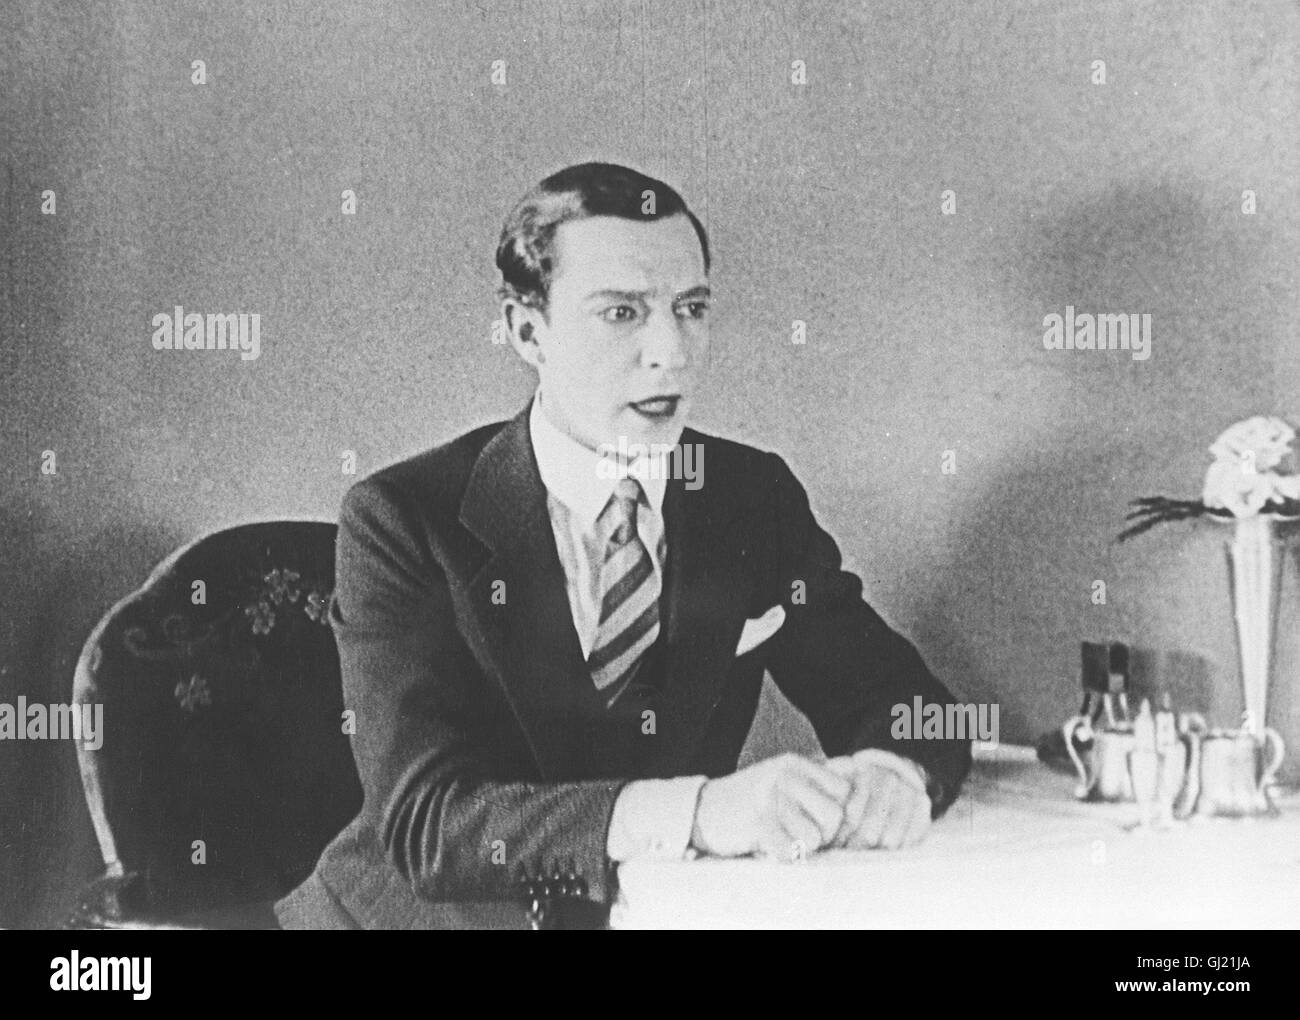 BUSTER KEATON als Jimmie Shannon in 'Seven Chances'. Bereits seit seiner frühesten Jugend geriet Buster Keaton in die Welt des Vaudeville-Theaters. Neben Charlie Chaplin, Harold Lloyd und Harry Langdon wurde er zu einem der berühmtesten Schauspieler des amerikanischen Kinos der 20er Jahre. Auf dem Gipfel seines Ruhmes angelangt, setzte er mit Werken wie 'The General', 'Steamboat Bill Jr.' und 'Sherlock Jr.' alles daran, das große Schauspiel mit dem Ausdruck der bizzarsten Phantasie zu verbinden. Bild: BUSTER KEATON als Jimmie Shannon in 'Seven Chances'. Regie: Buster Keaton aka. Dokumentation Stock Photo